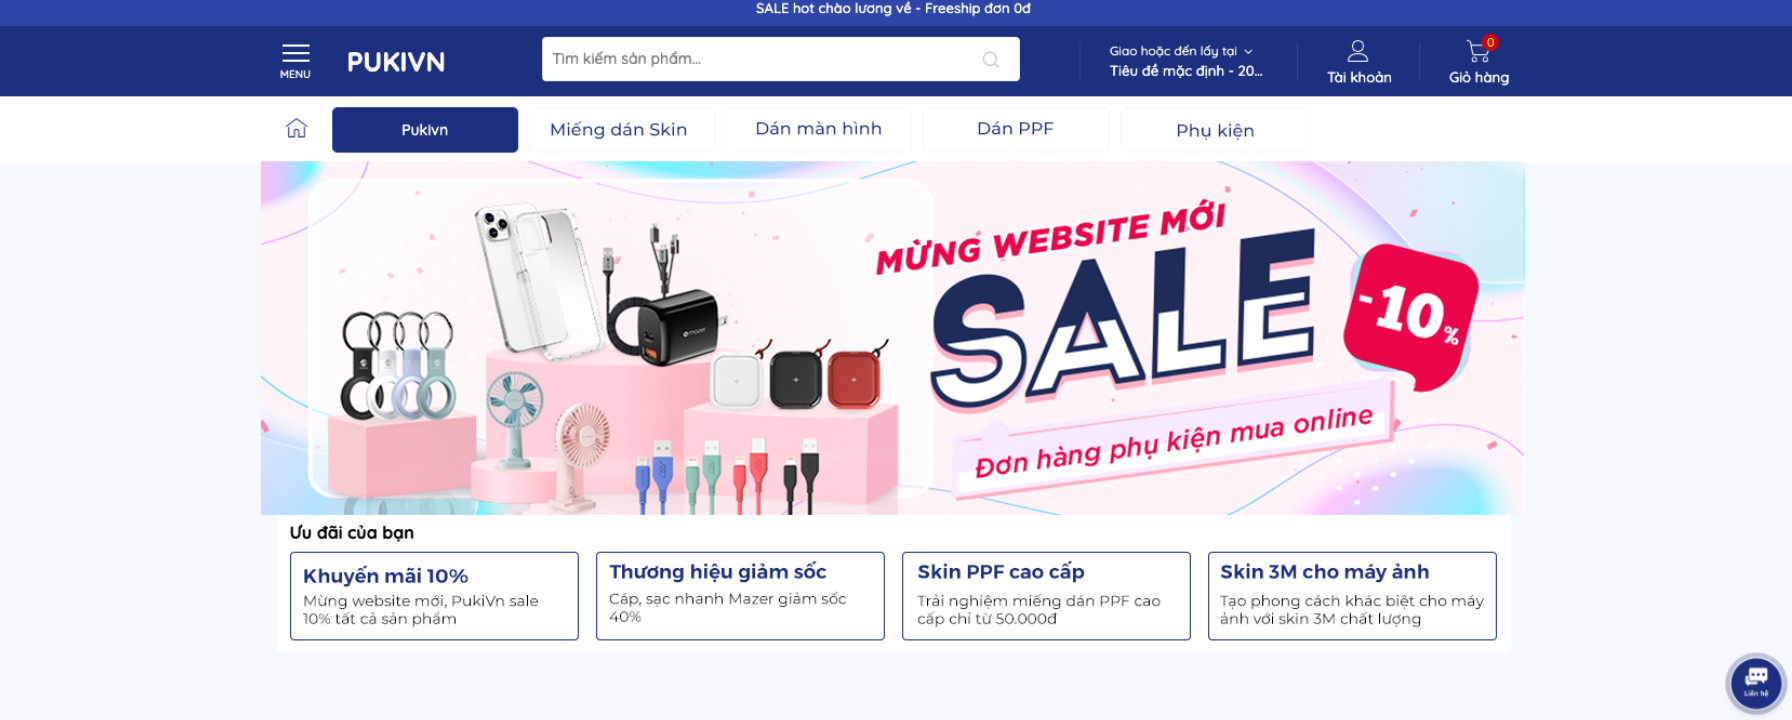 Mừng Website mới, Pukivn giảm 10% đơn hàng Online, đặt hàng ngay thôi nào!!